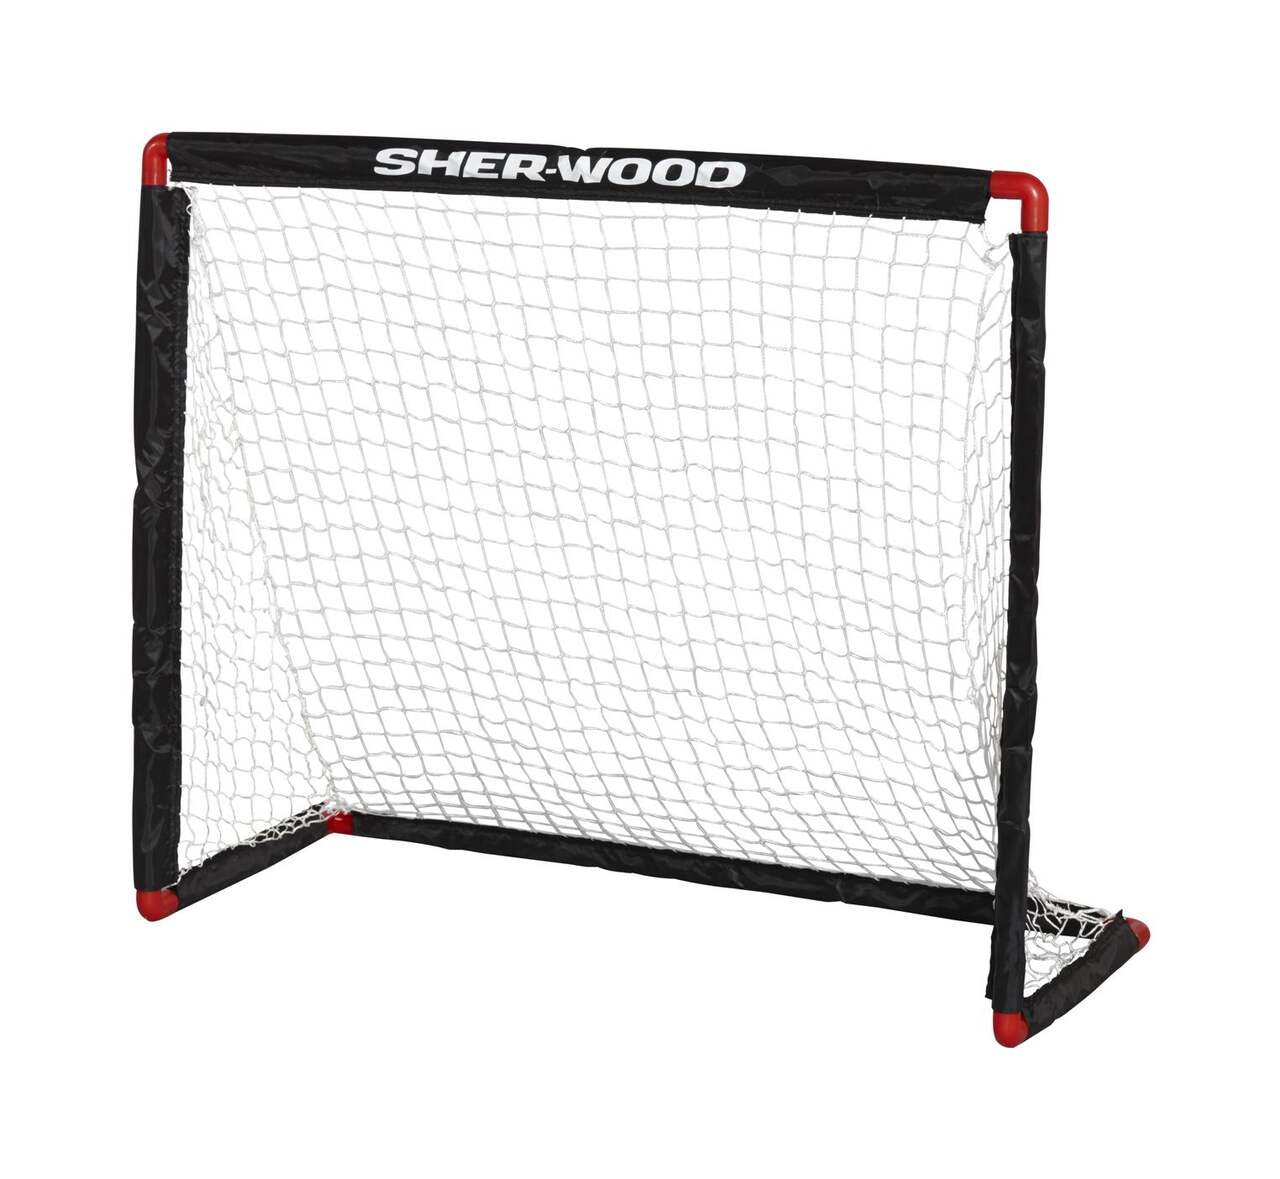 NHL Hockey Goal Netting and Padding - xHockeyProducts Canada